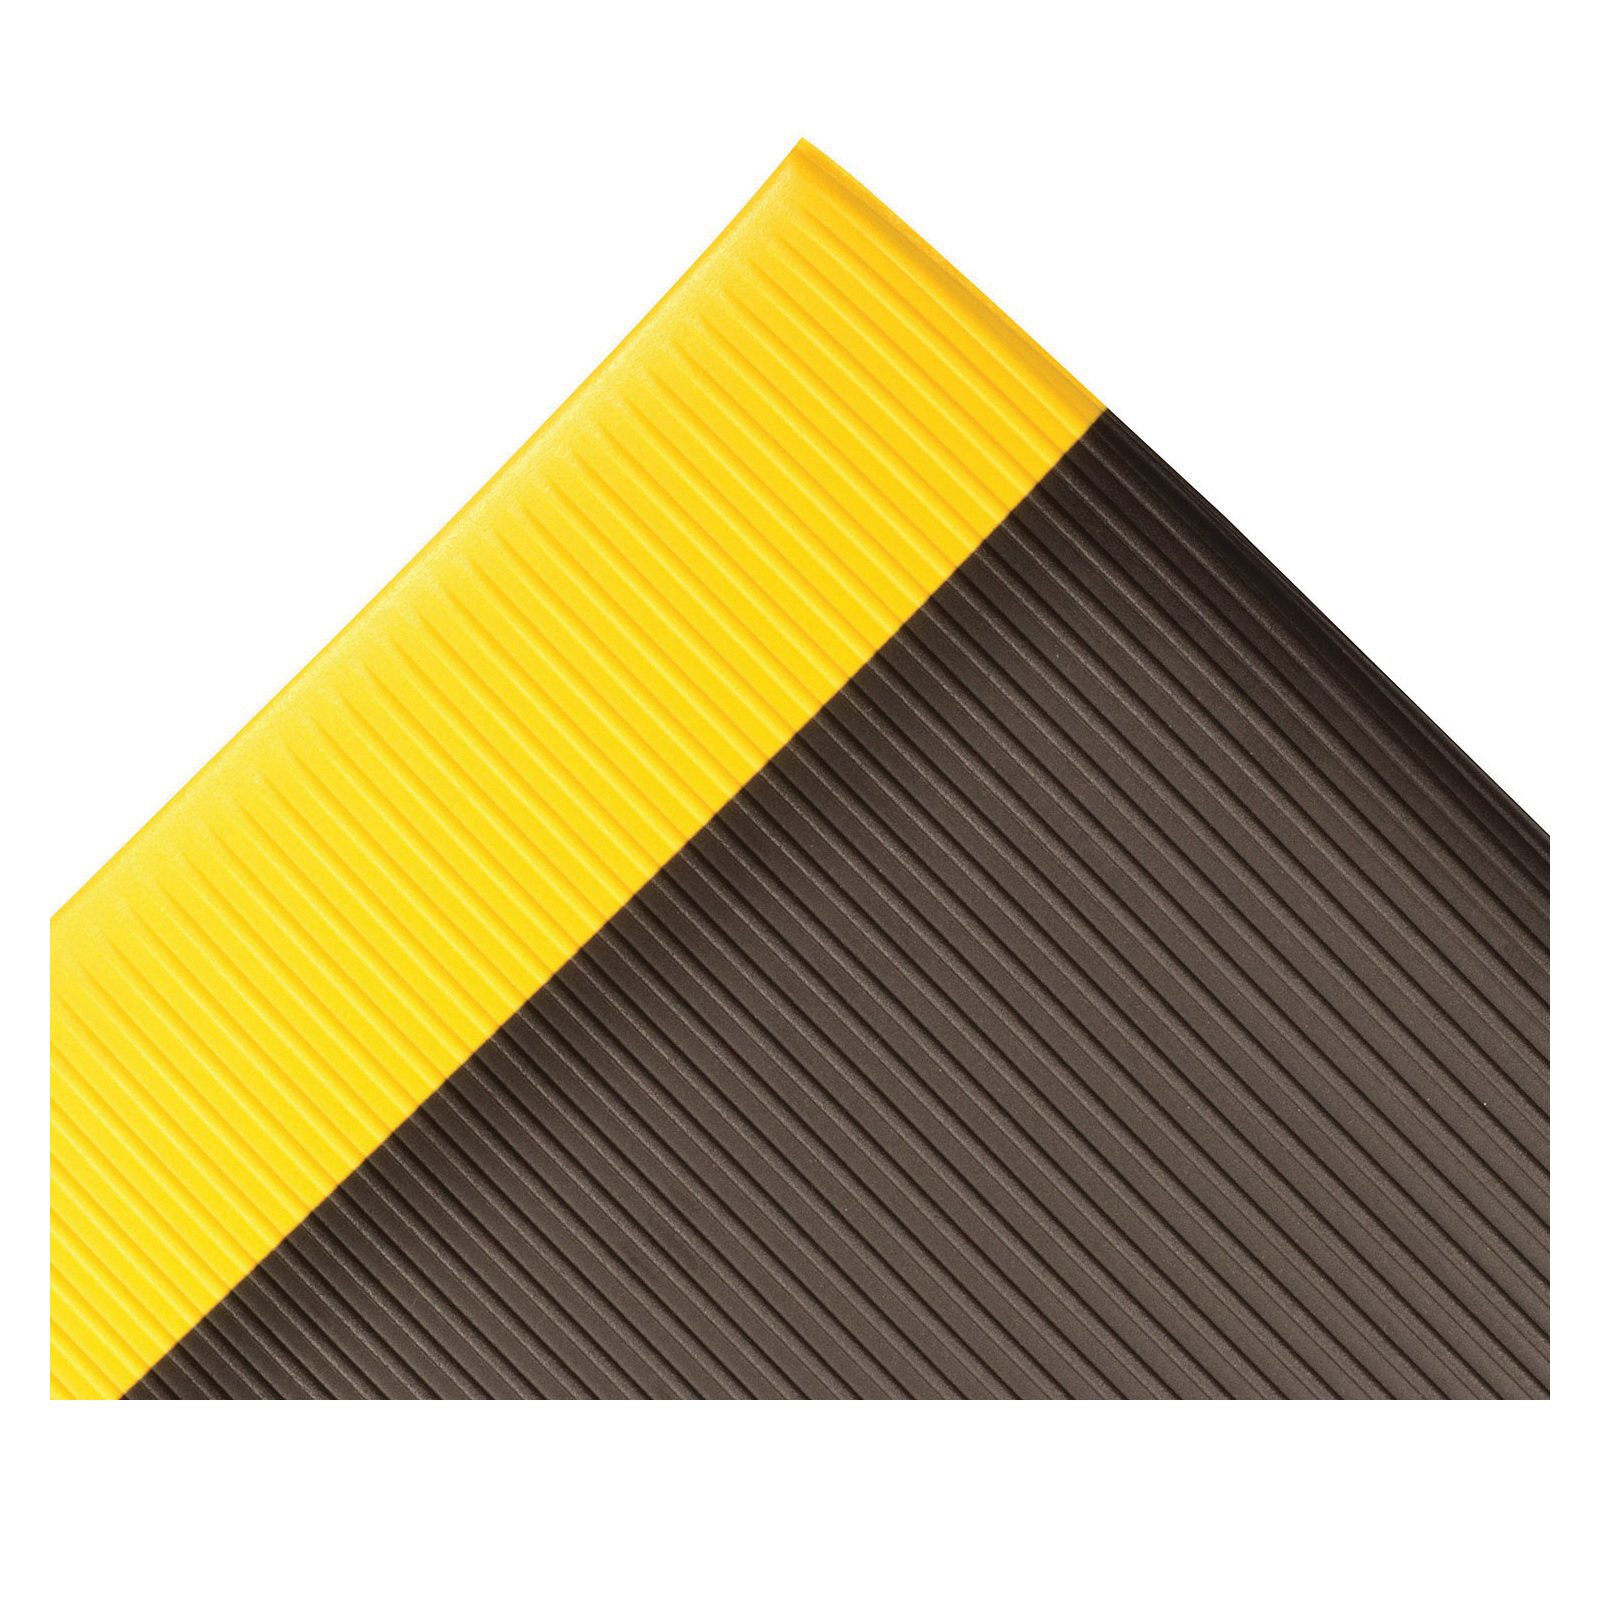 NoTrax 406 Razorback Anti-Fatige Mat with Dyna-Shield PVC Sponge 3 Width x 6 Length x 1/2 Thickness Black/Yellow